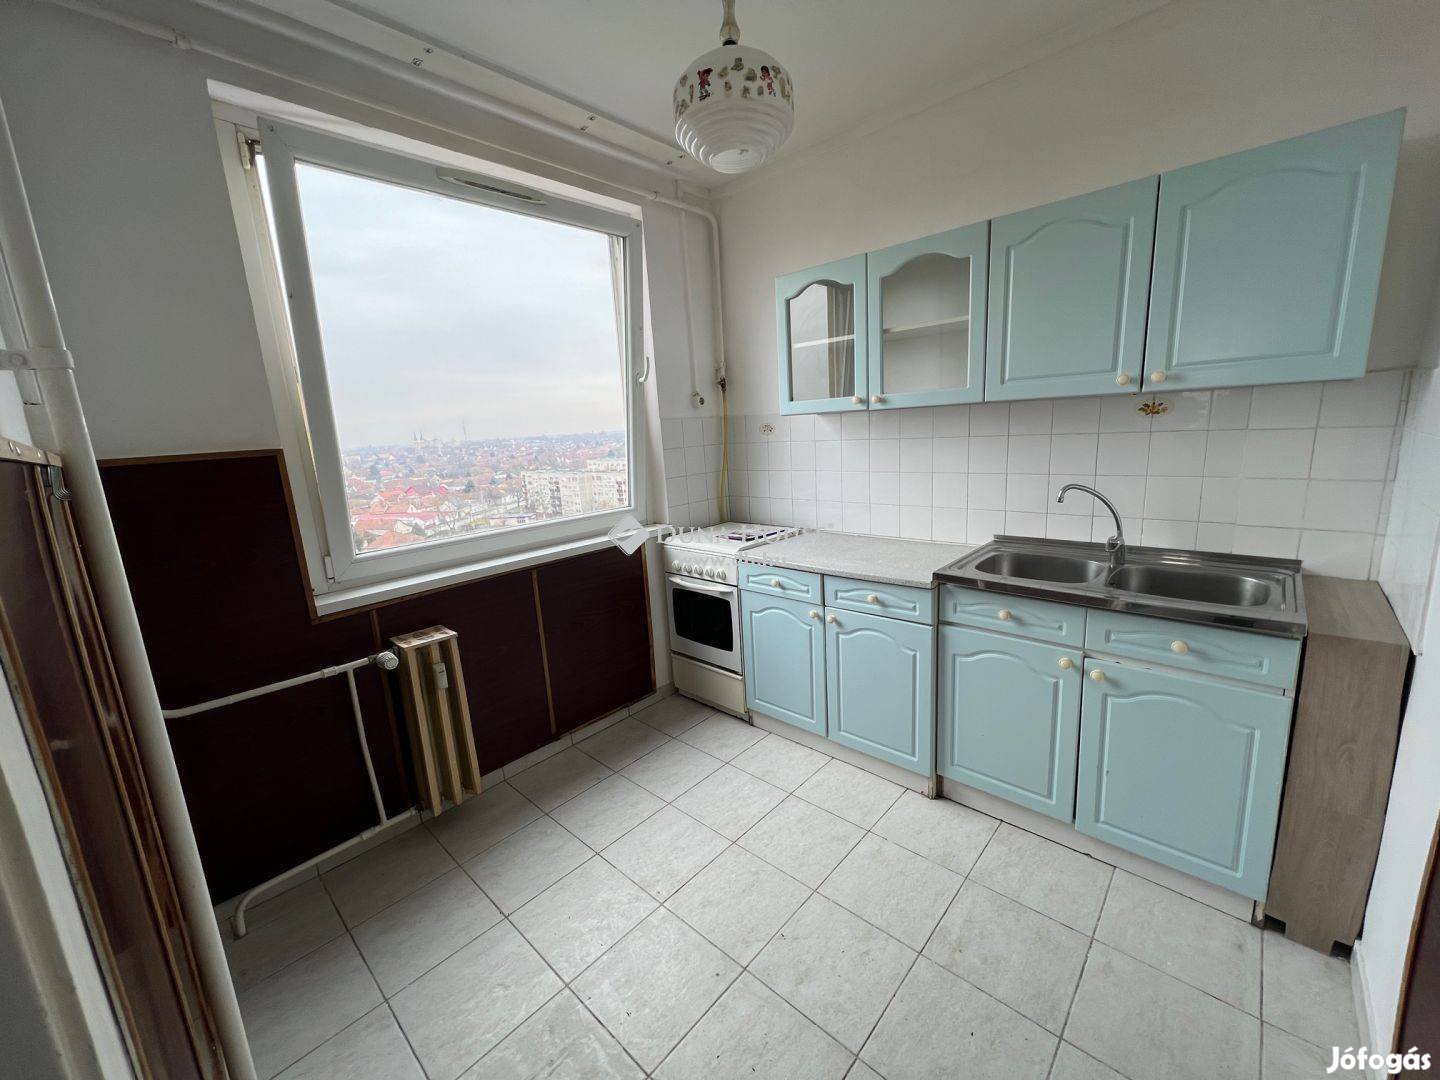 Kiskunfélegyházán Petőfi lakótelepen 2 szobás lakás eladó Liftes házba